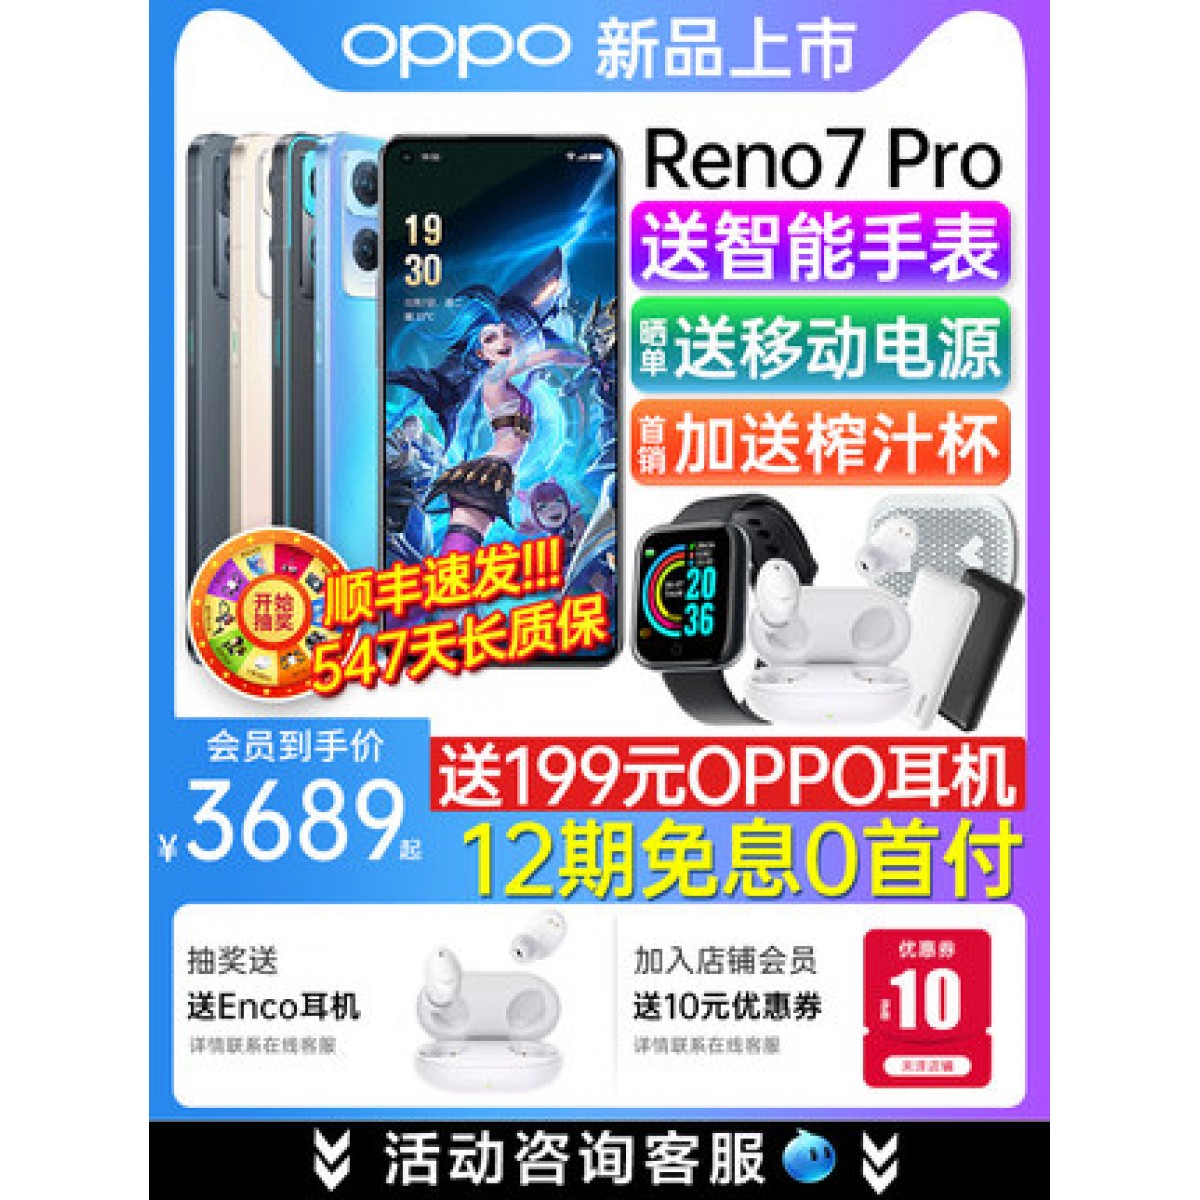 [12期免息]OPPO Reno7 Pro opporeno7pro手机新款上市oppo手机官方旗舰店官网6pro se0pp0英雄联盟限定量版5g